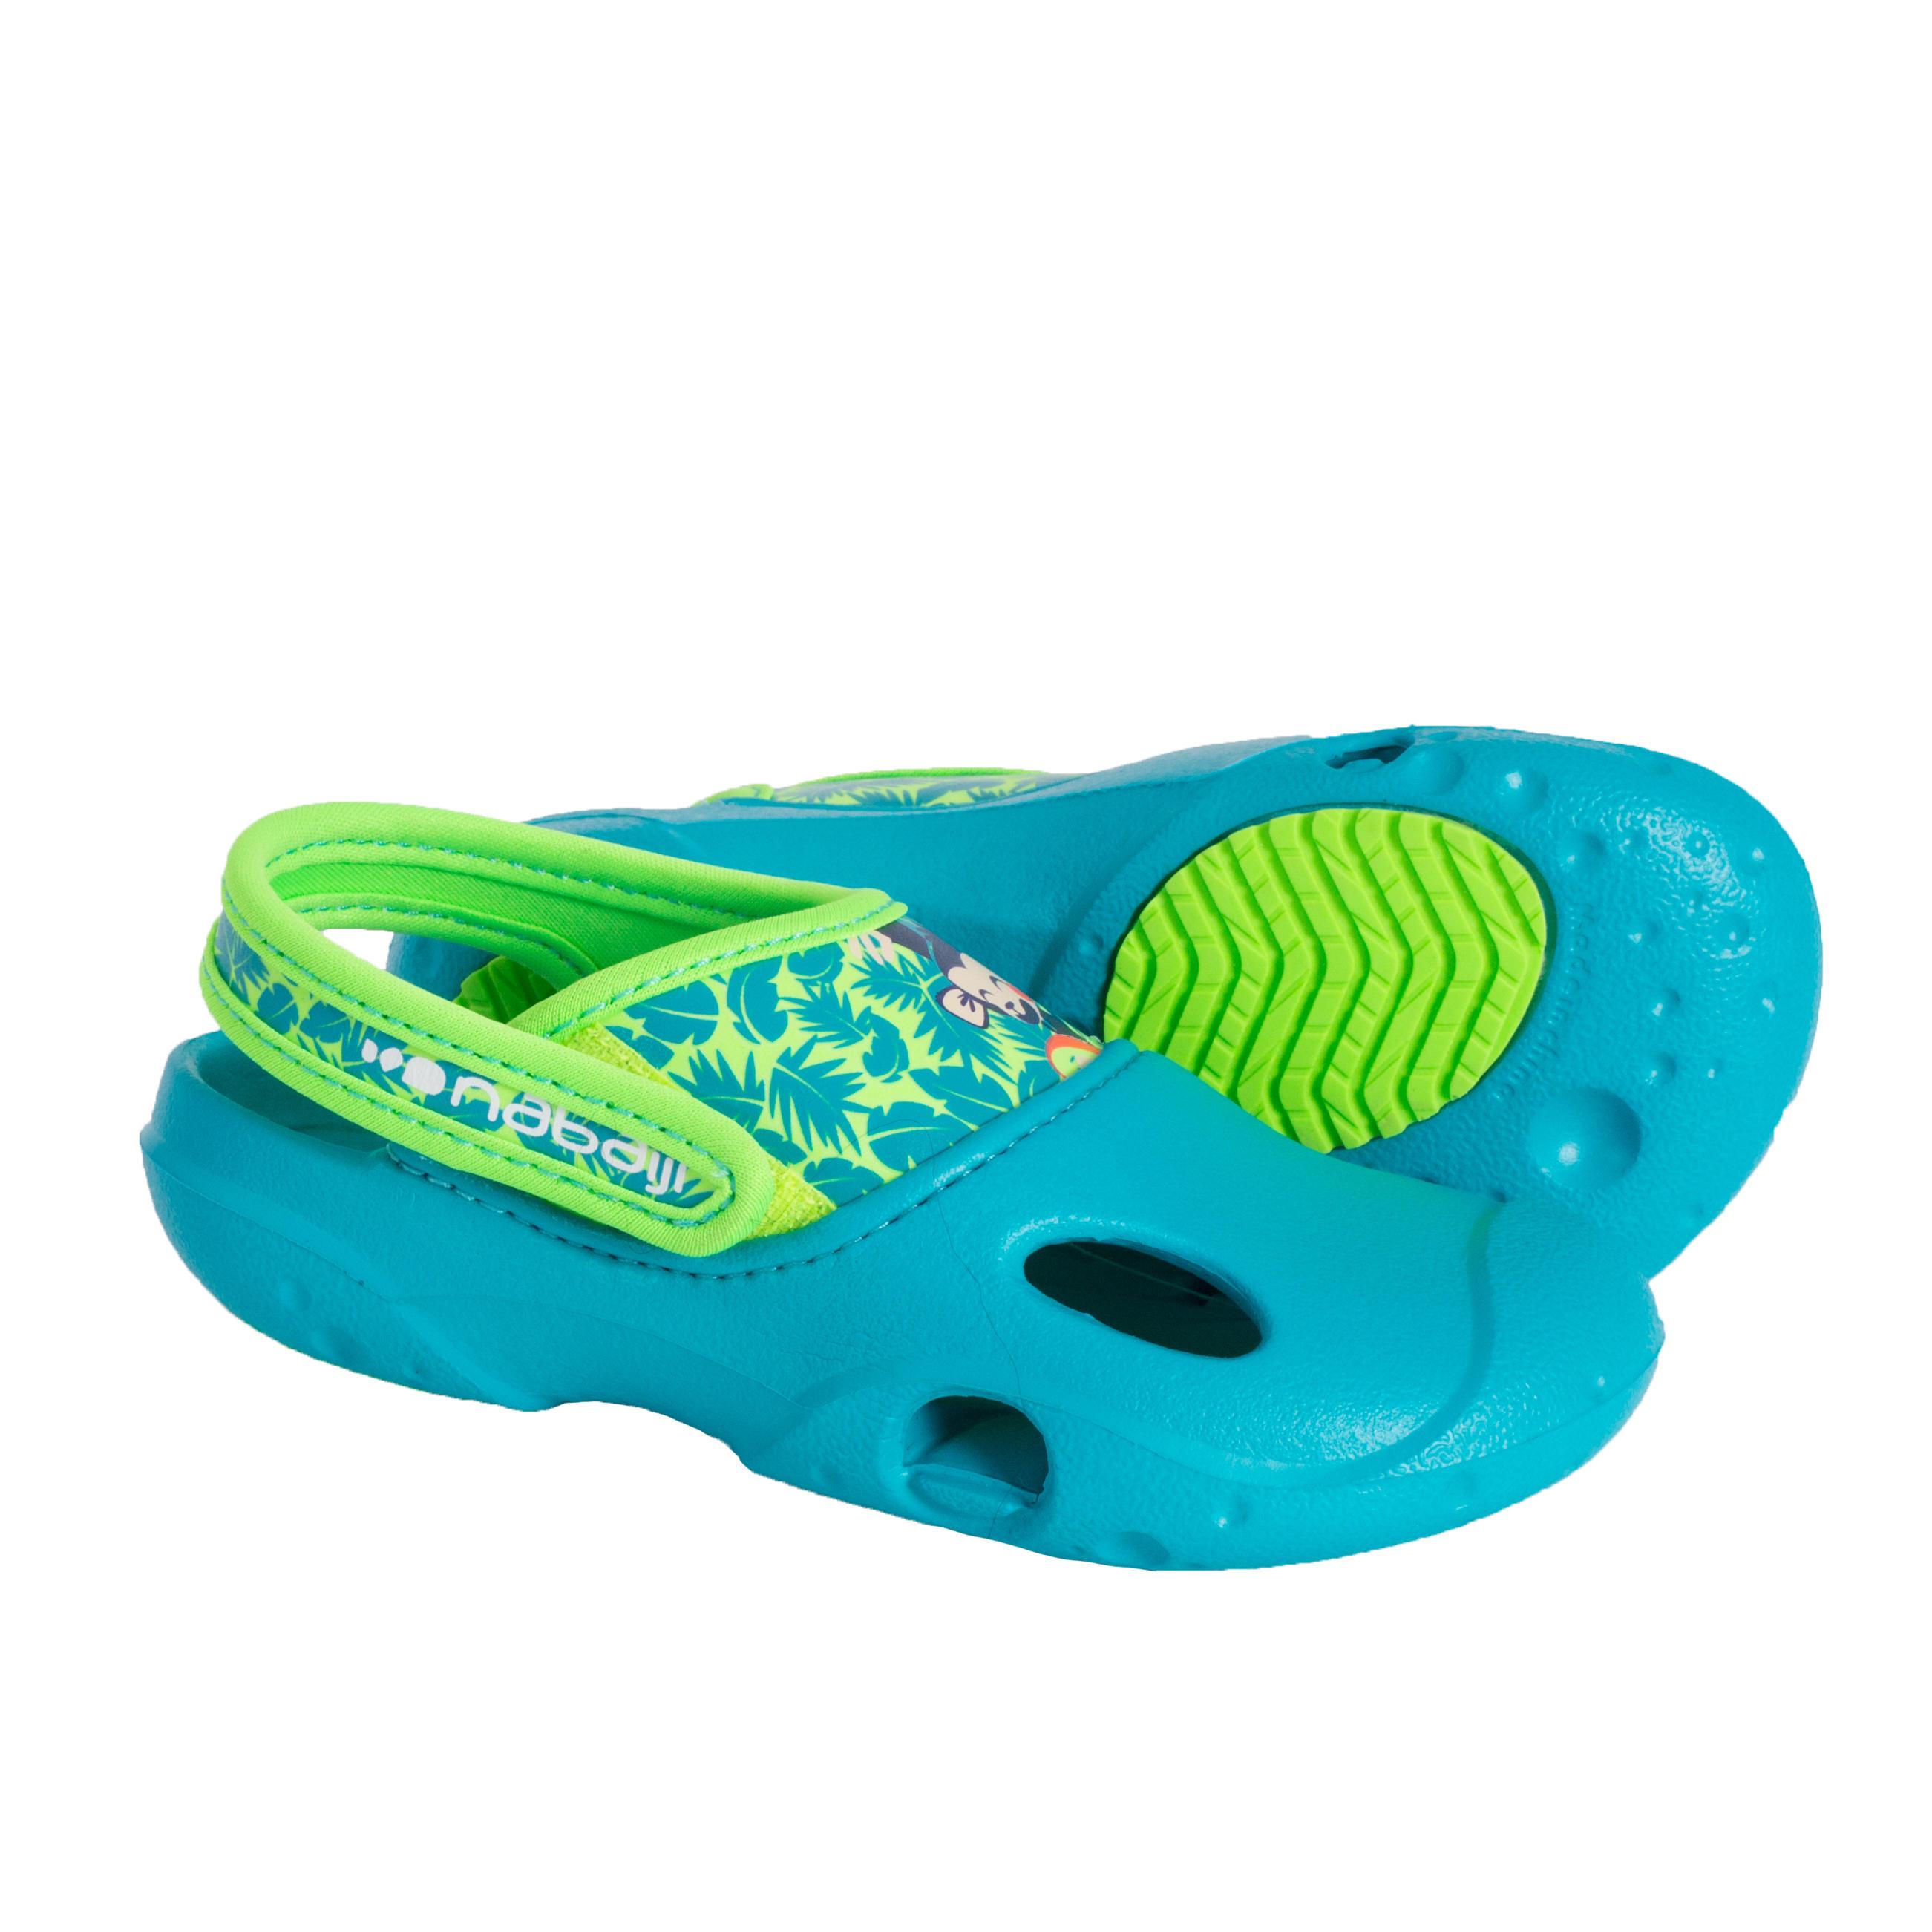 [ด่วน!! โปรโมชั่นมีจำนวนจำกัด] รองเท้าแตะเดินริมสระสำหรับเด็กผู้ชาย (สีเขียว) สำหรับ ว่ายน้ำ โปโลน้ำ ออกกำลังกายในน้ำ